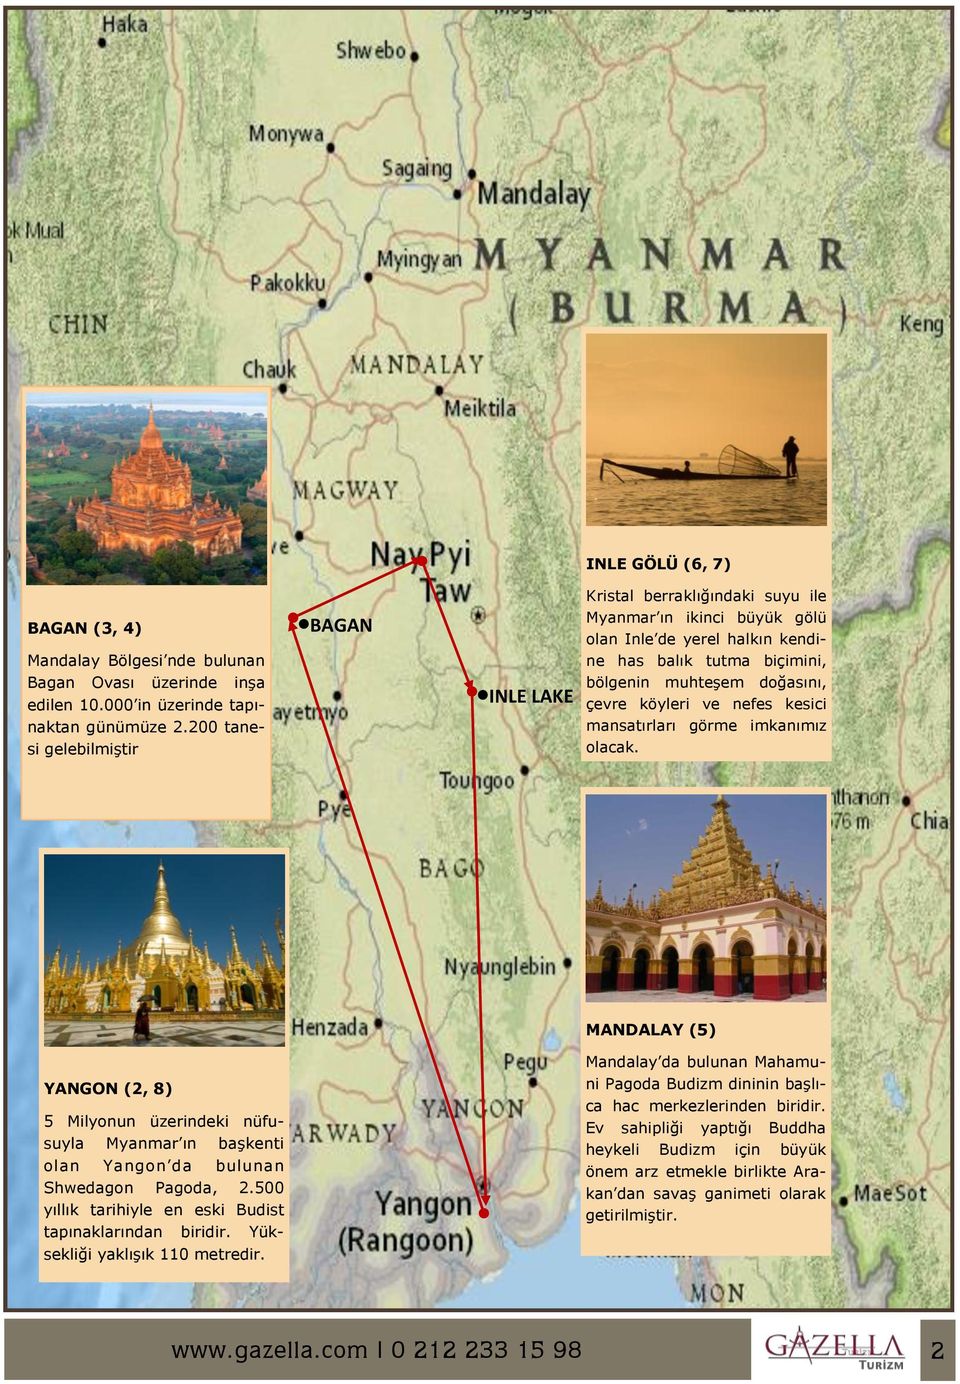 mansatırları görme imkanımız olacak. MANDALAY (5) Mandalay da bulunan Mahamu- YANGON (2, 8) 5 Milyonun üzerindeki nüfusuyla Myanmar ın başkenti olan Yangon da bulunan Shwedagon Pagoda, 2.